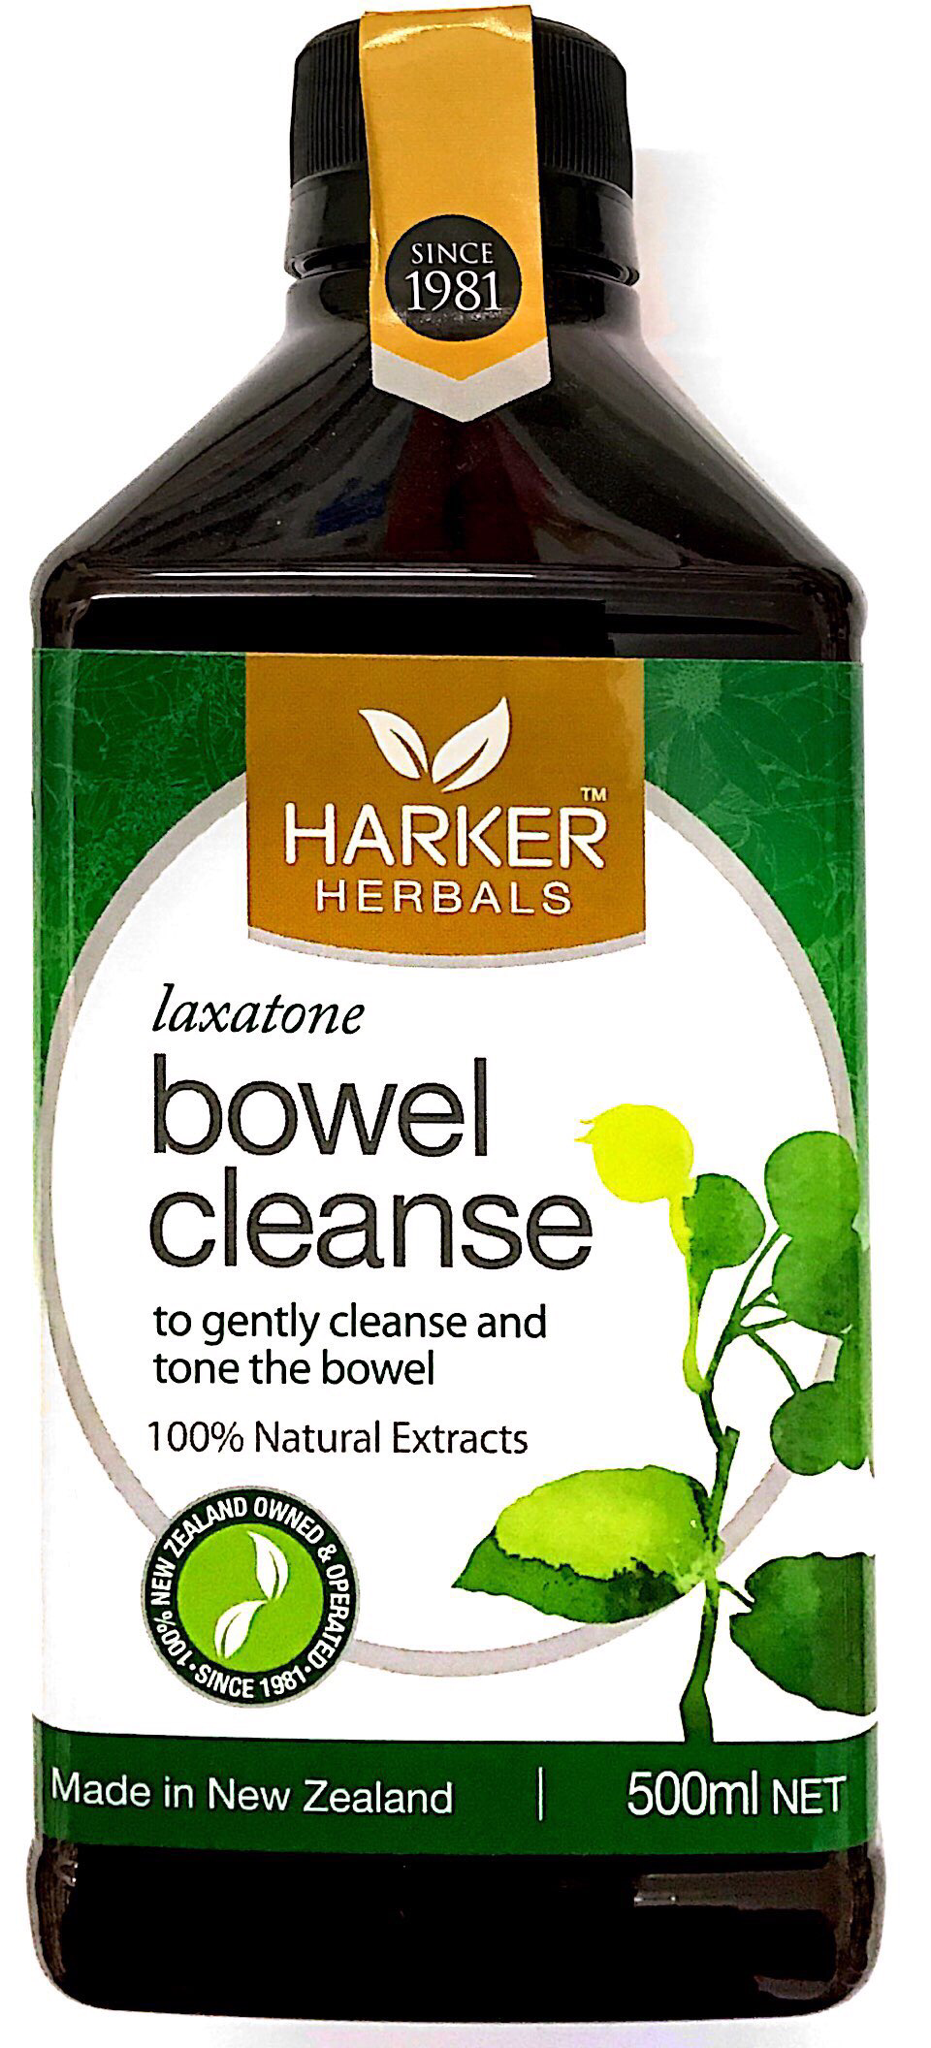 Harker Herbals Laxatone bowel cleanse - 500 ml - Pakuranga Pharmacy